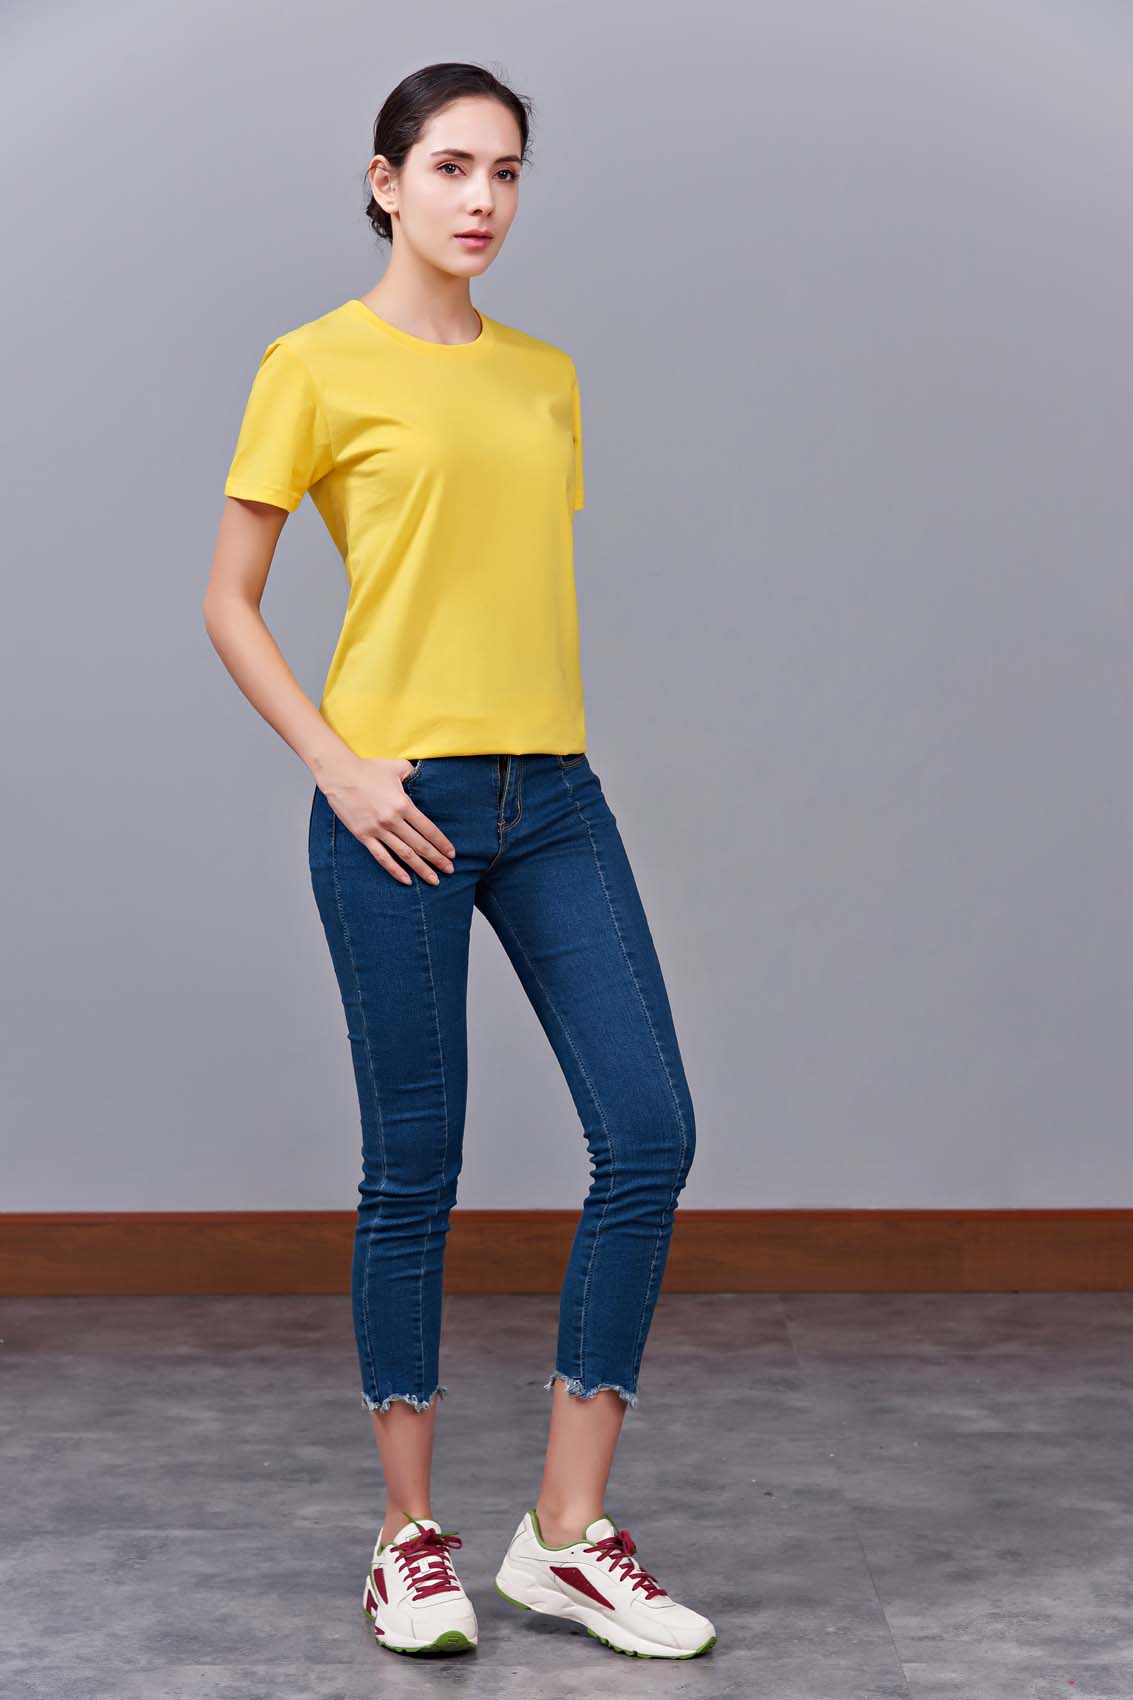 夏季黄色男女同款纯棉圆领速干文化衫#007huang